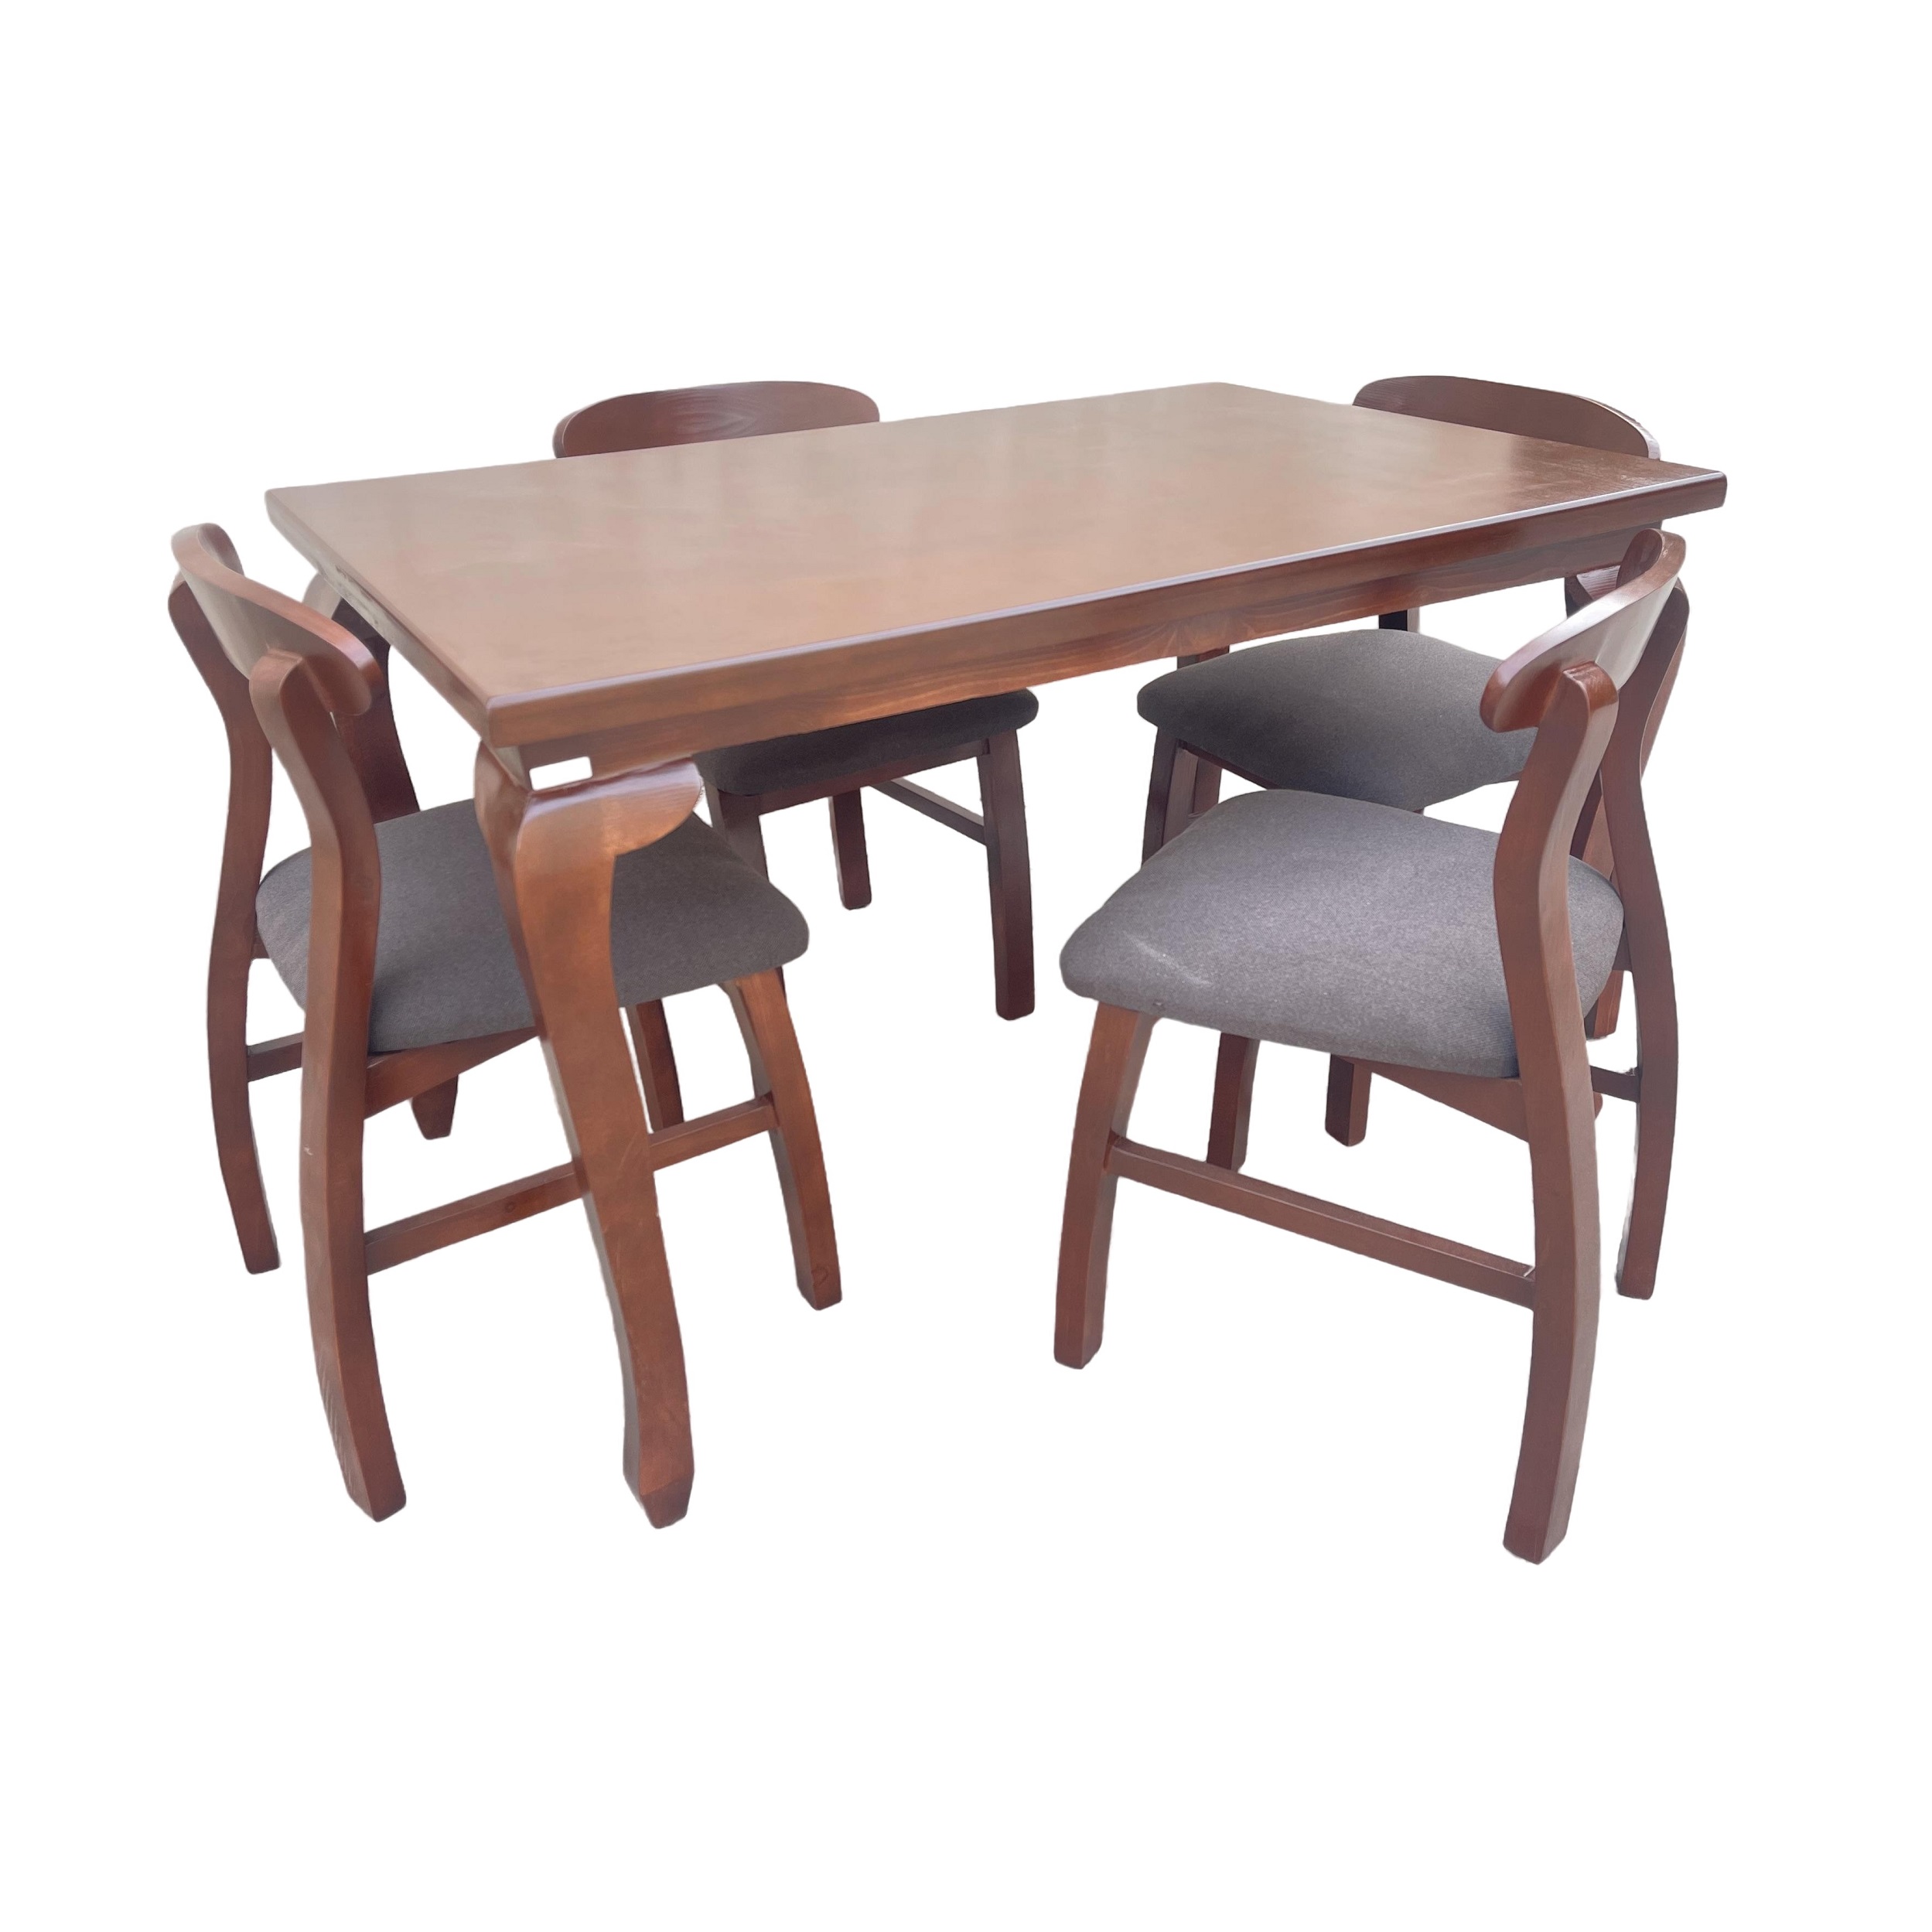 میز و صندلی ناهارخوری 4 نفره گالری چوب آشنایی مدل 854